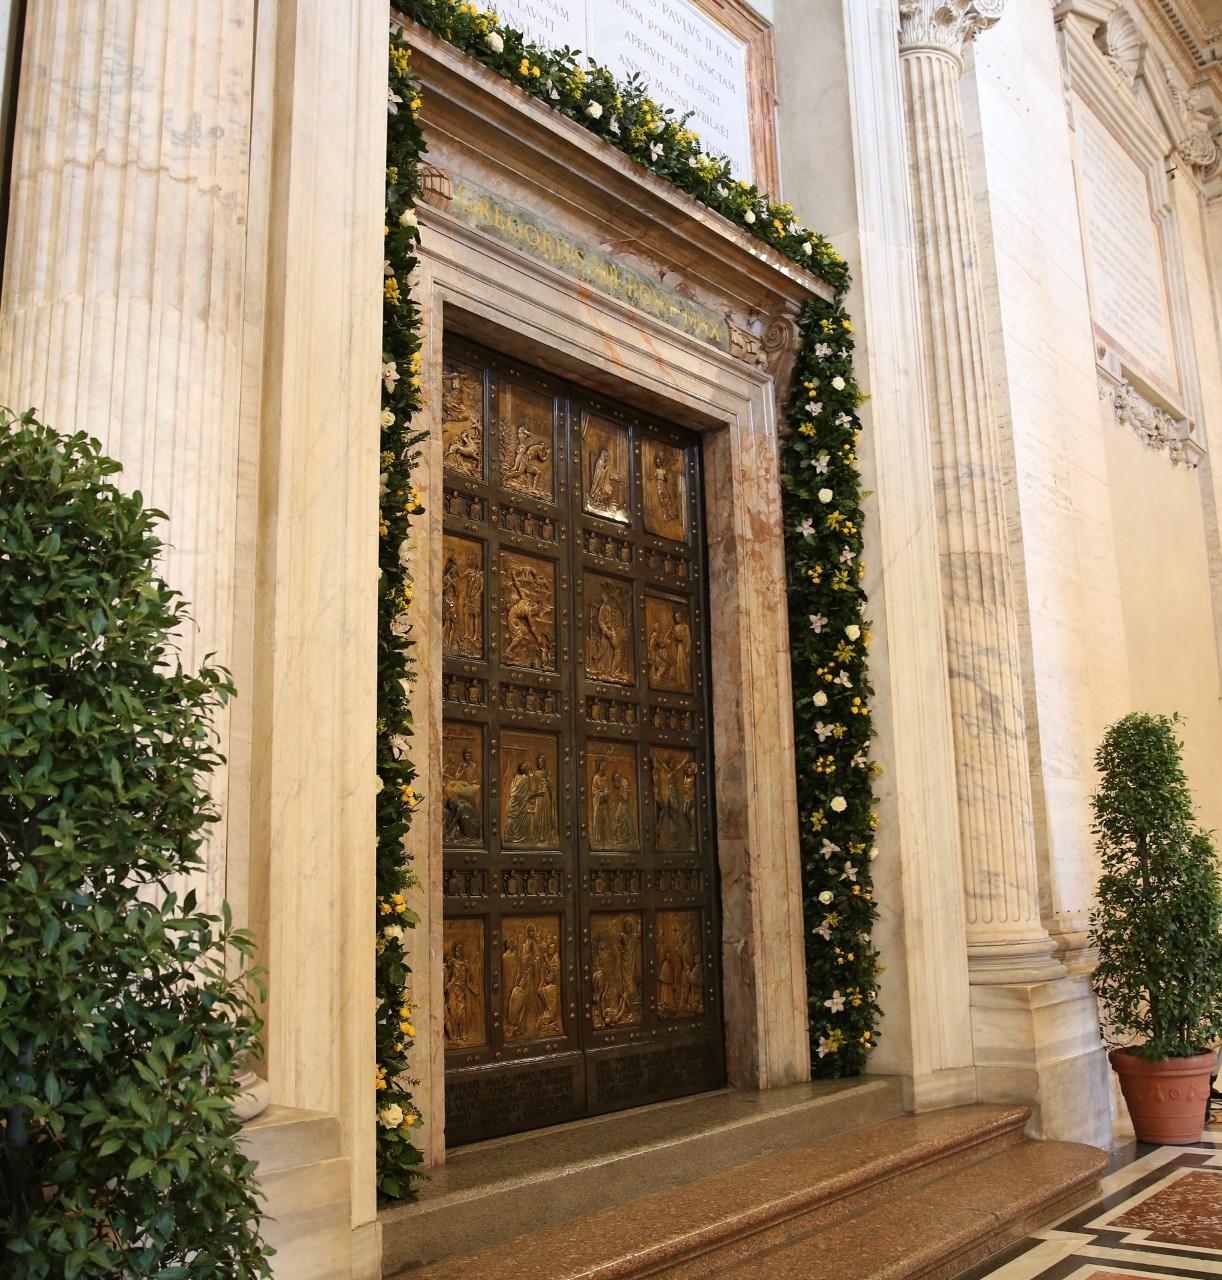 Porta Santa San Pietro